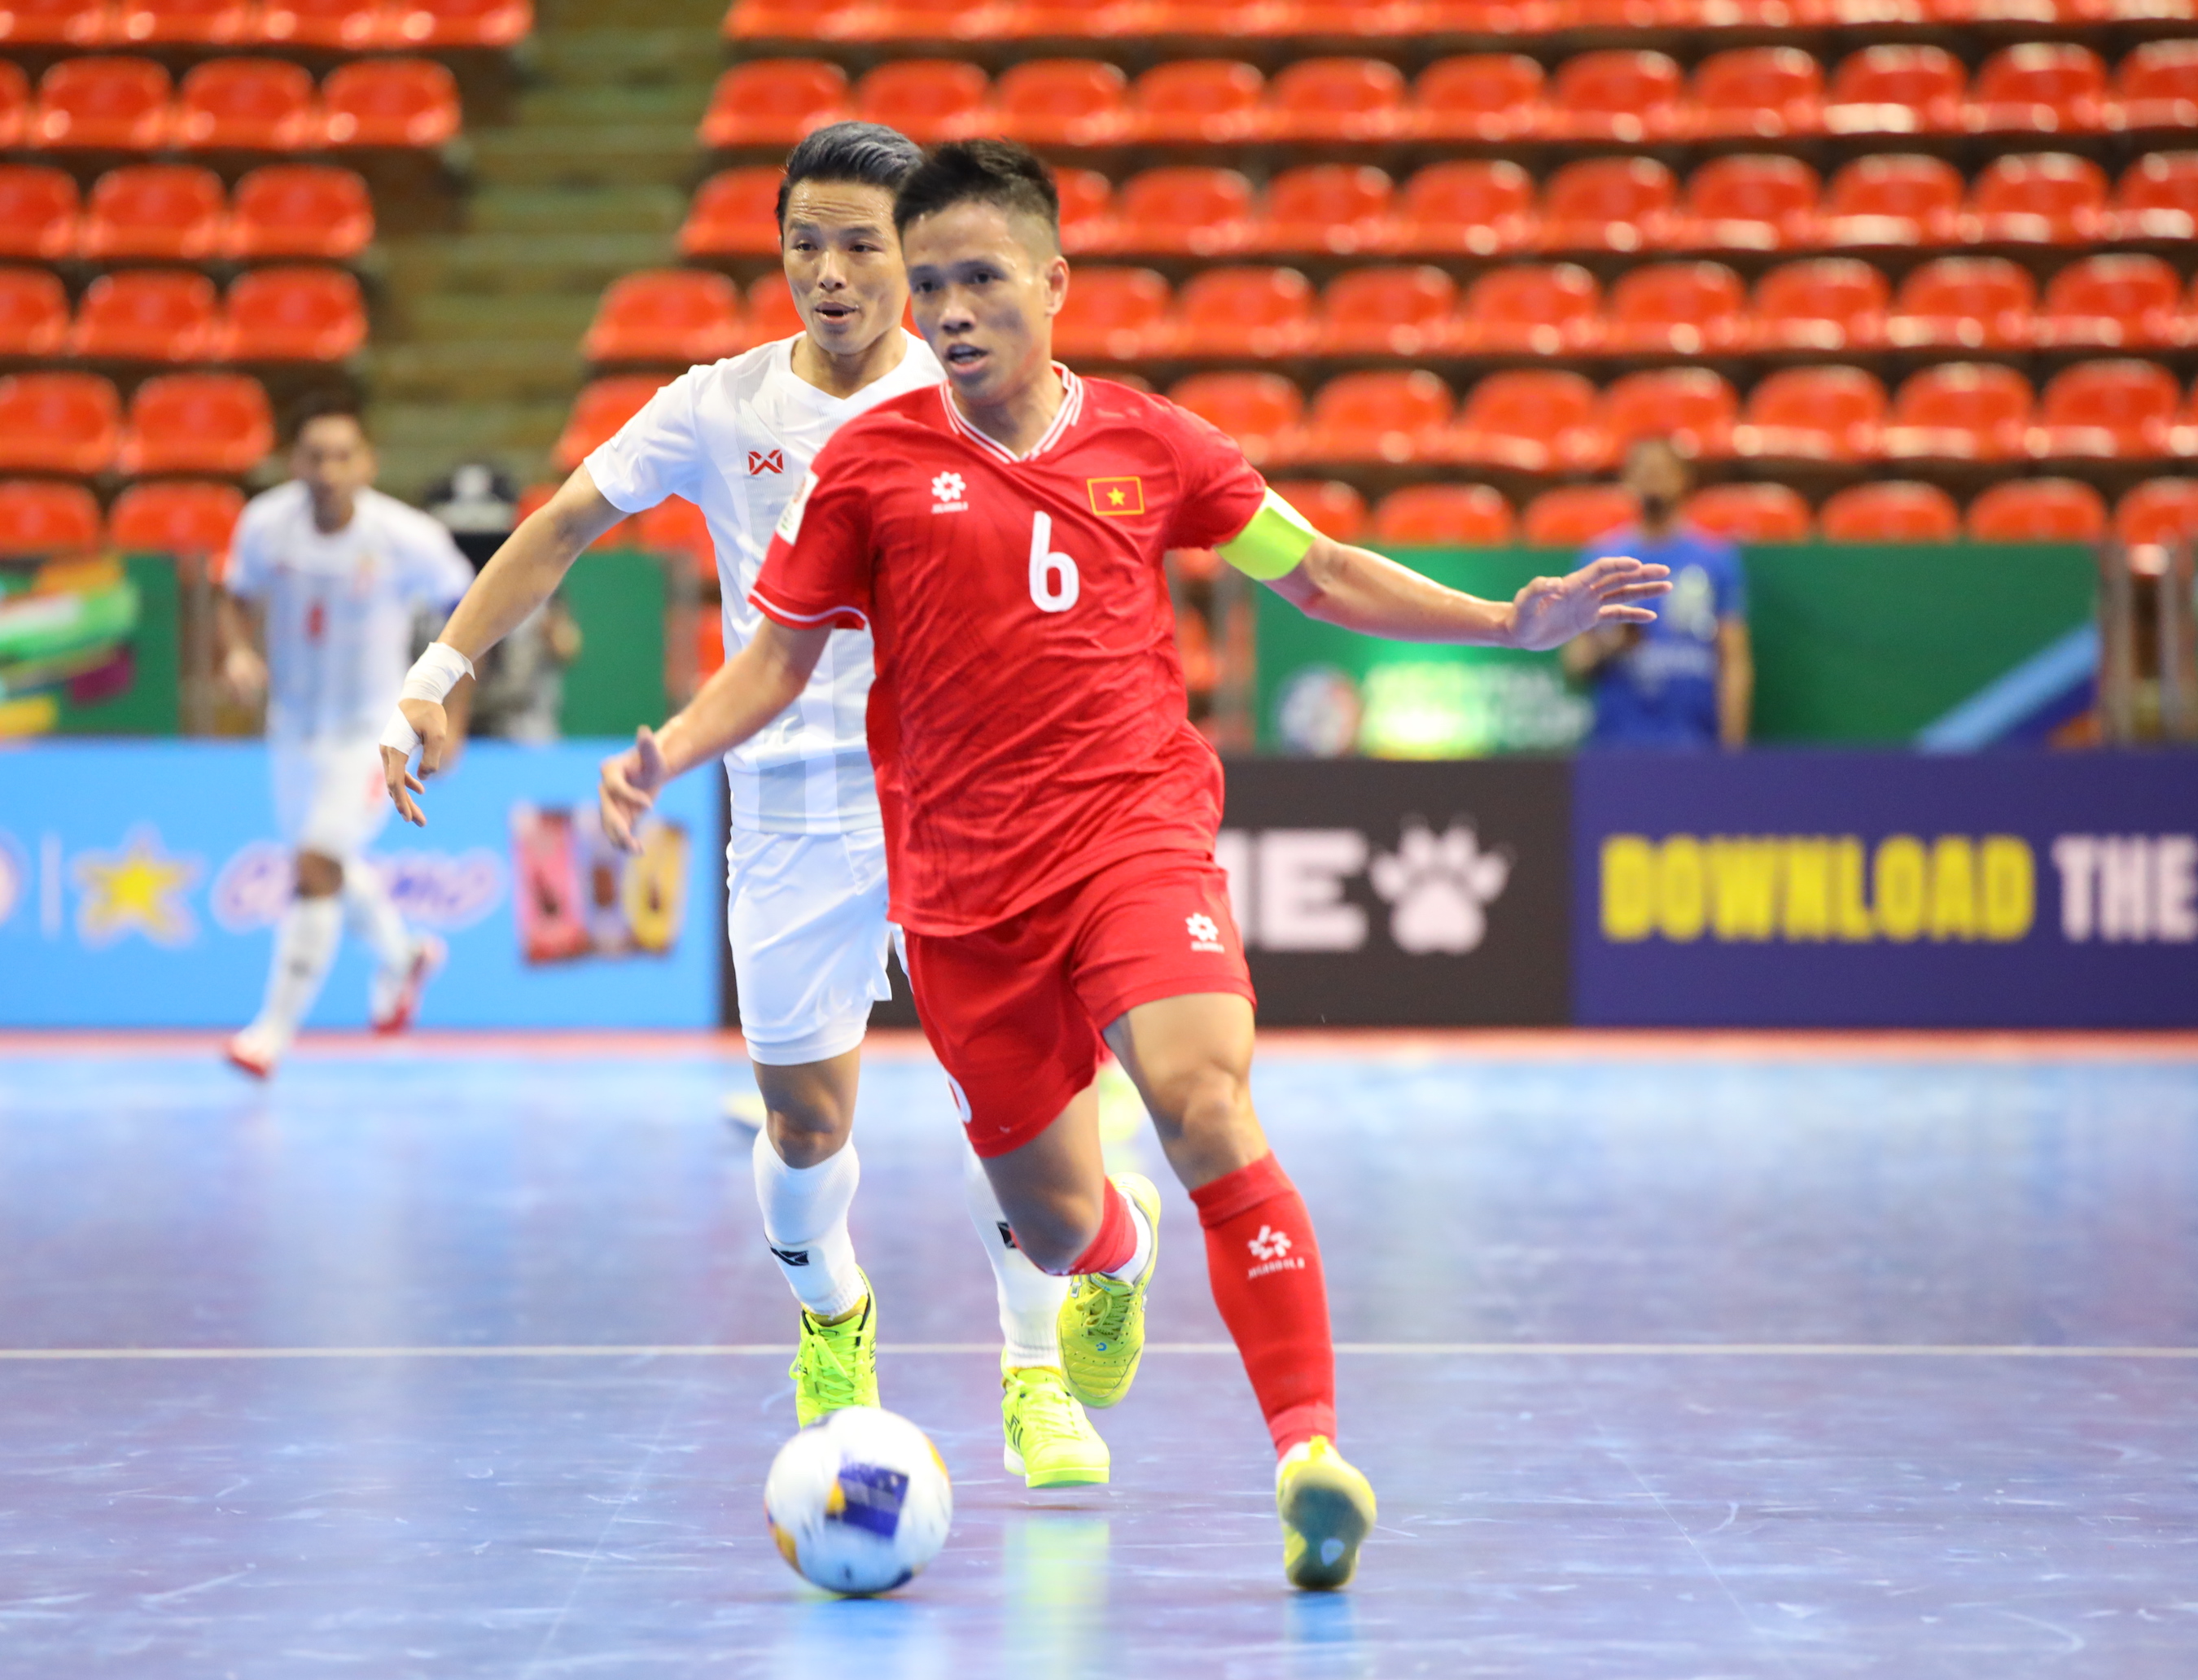 Đội trưởng Phạm Đức Hoà (ĐT Futsal Việt Nam): “Trung Quốc có sự tiến bộ nhanh chóng”